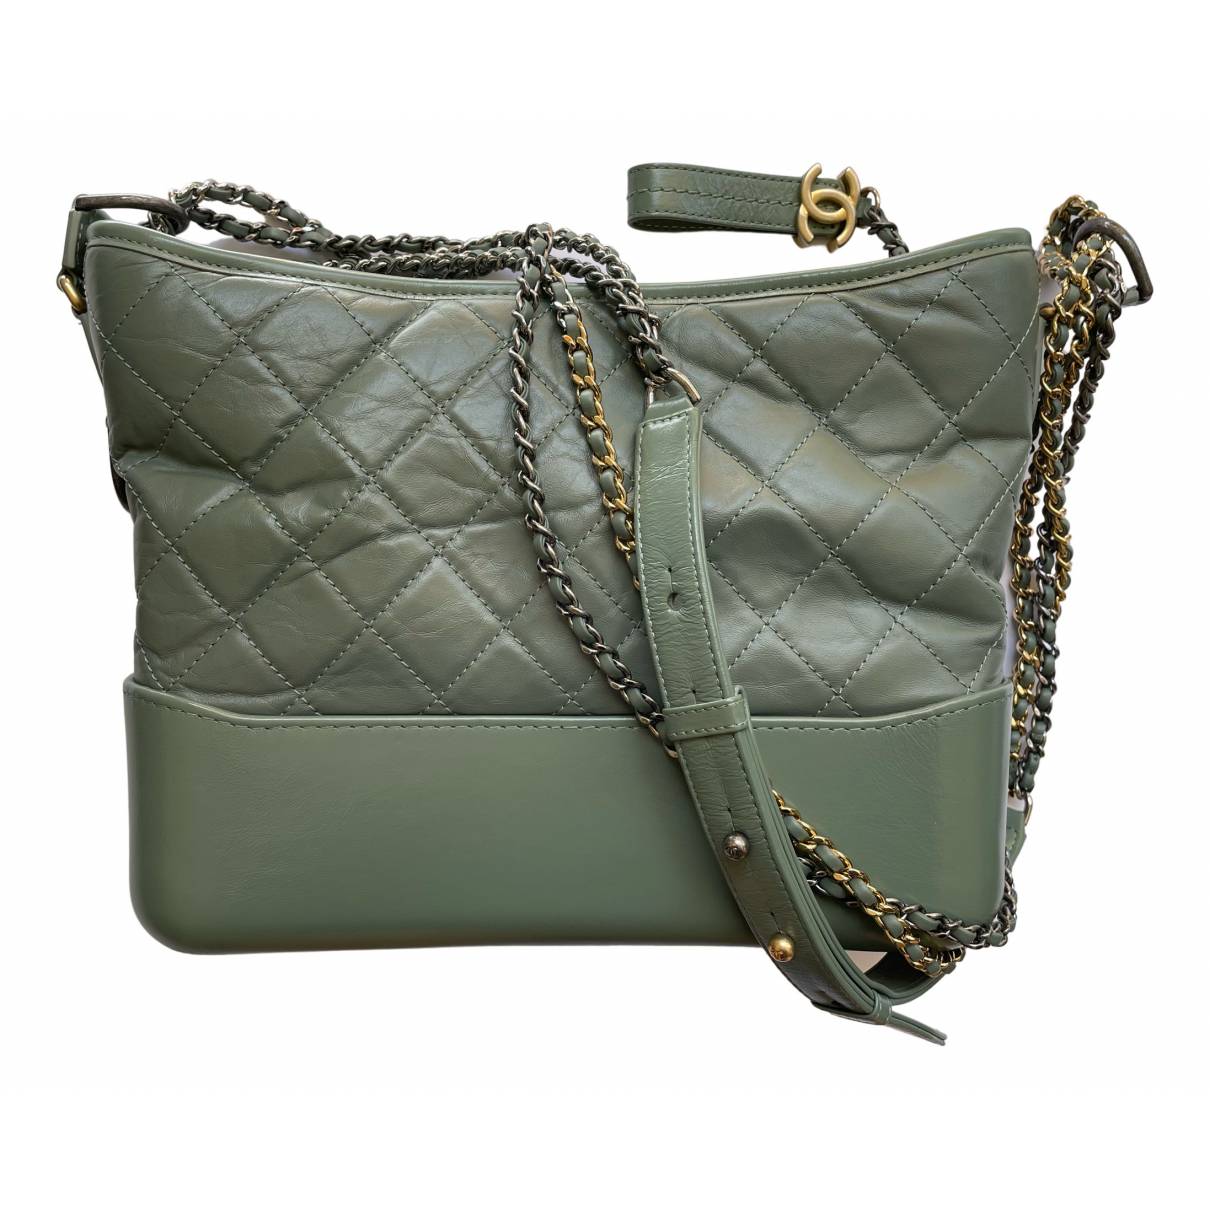 Gabrielle leather crossbody bag